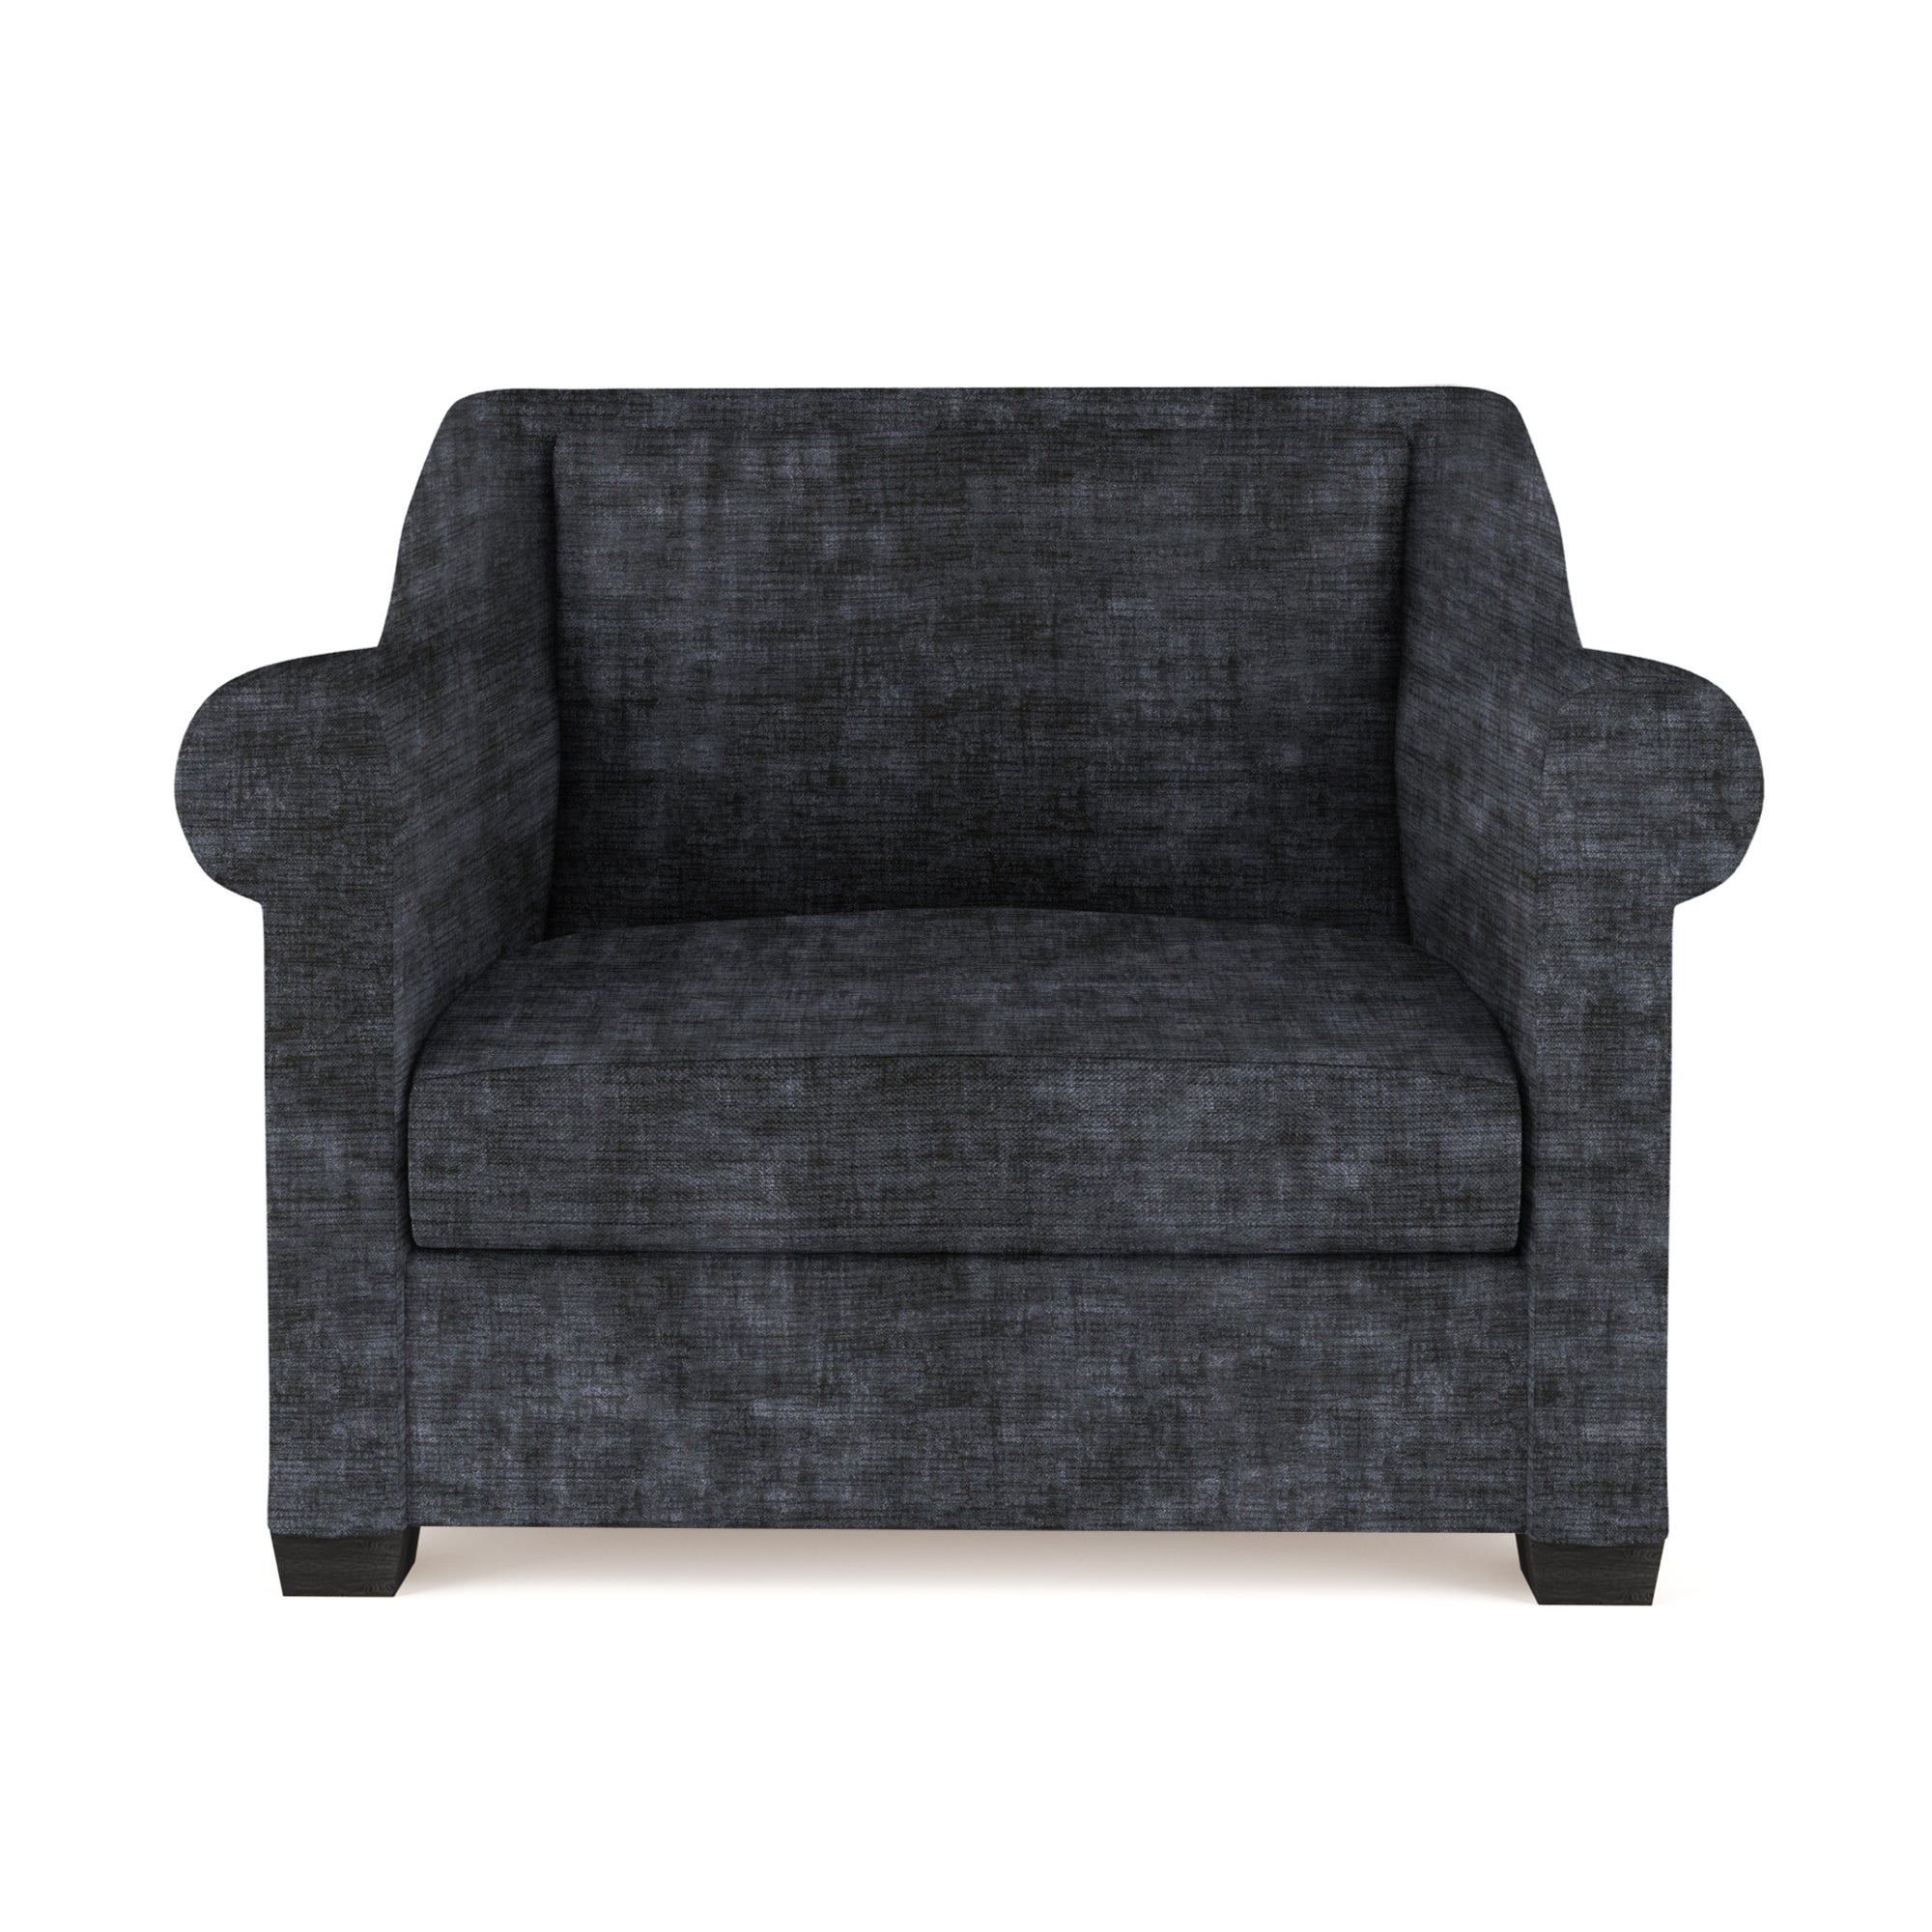 Thompson Chair - Graphite Crushed Velvet